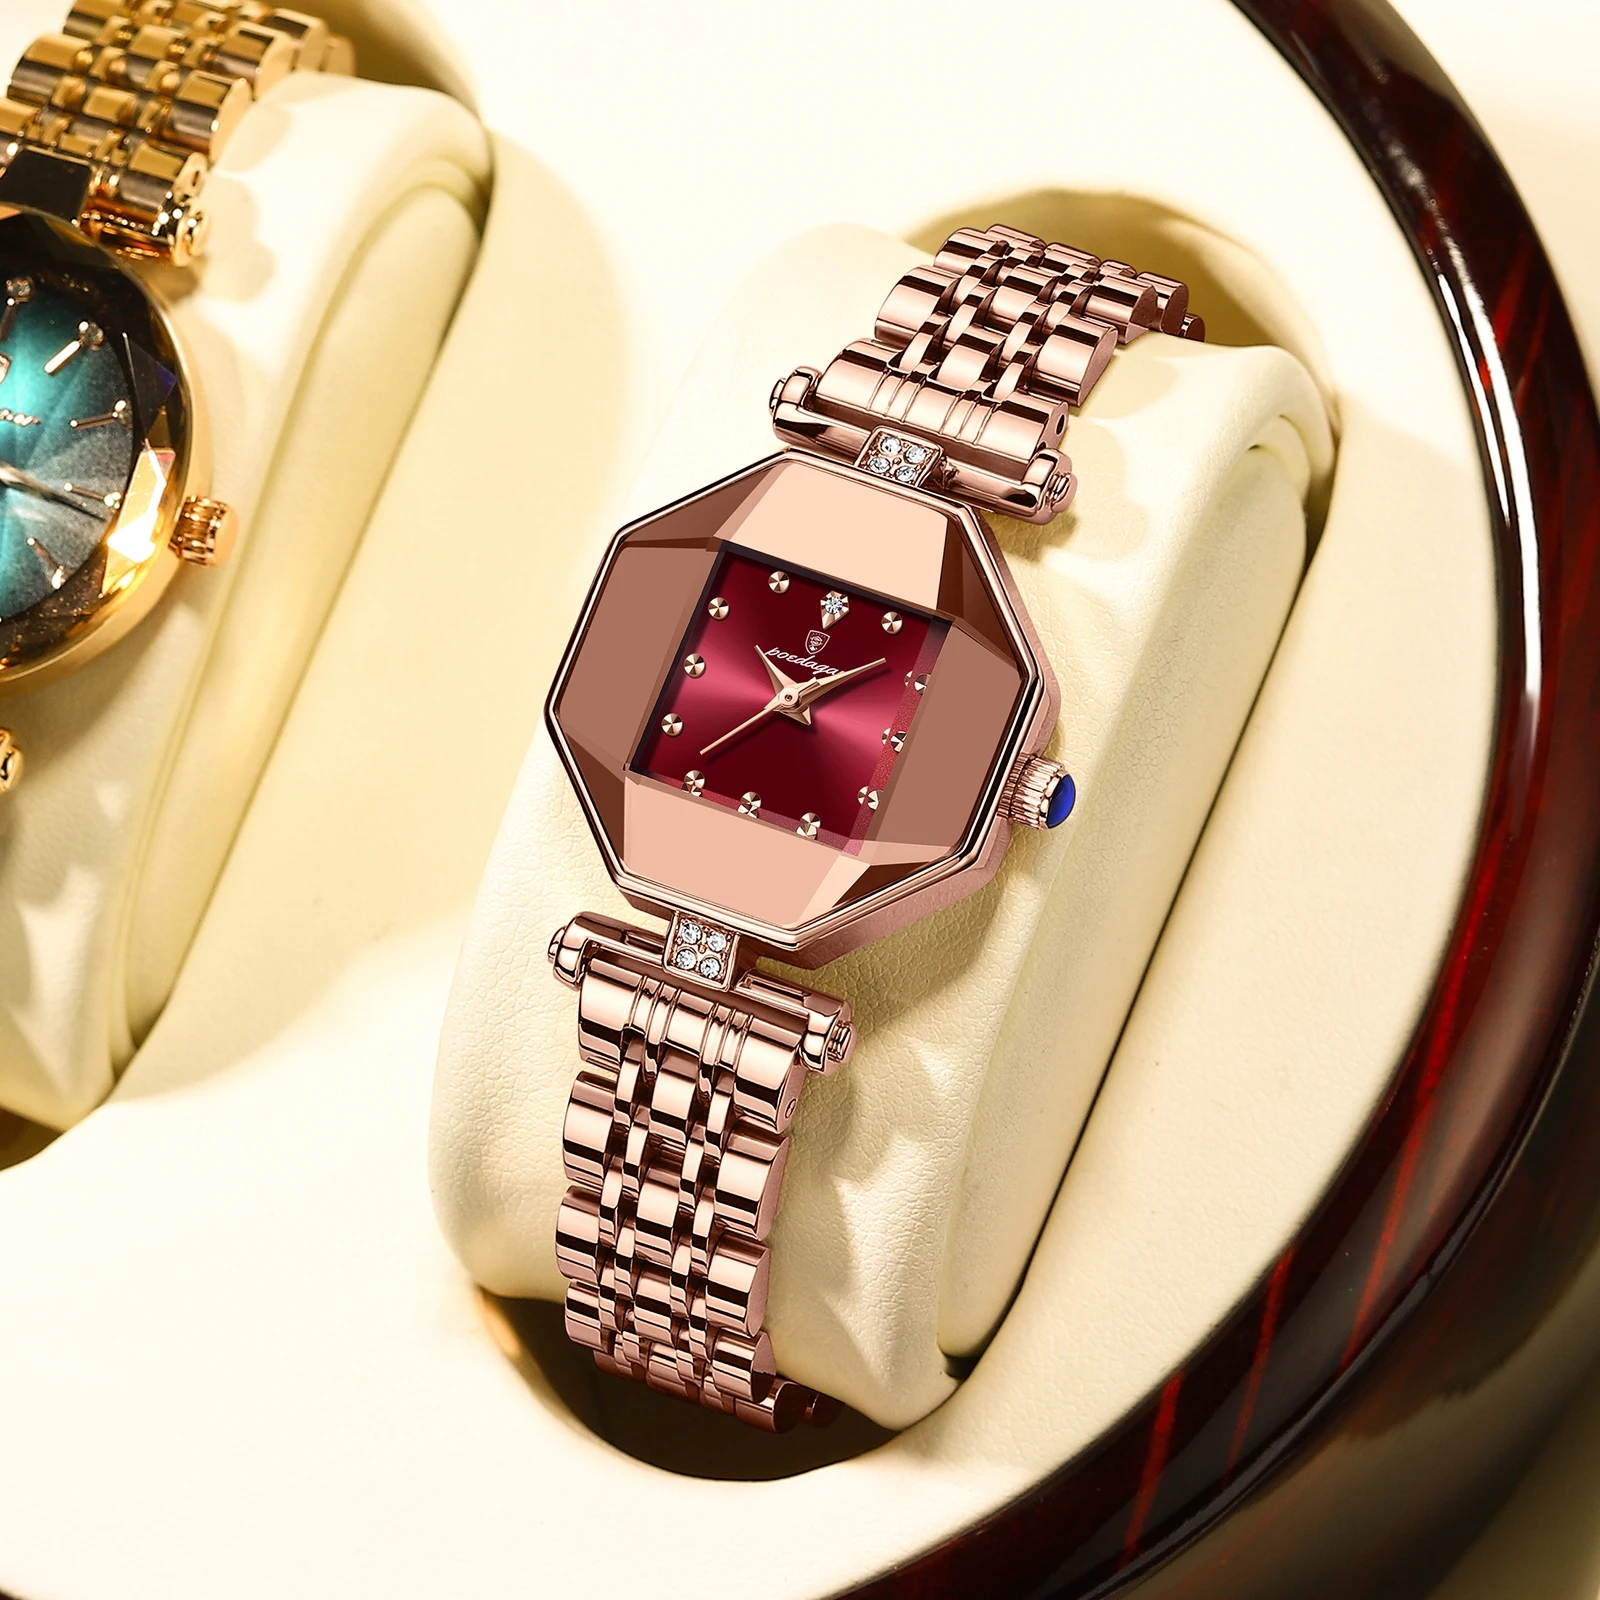 POEDAGAR Women Watch Fashion Luxury Stainless Stain Waterproof Quartz Watches Swiss Top Brand Rose Gold Ladies Wristwatch Gift enlarge